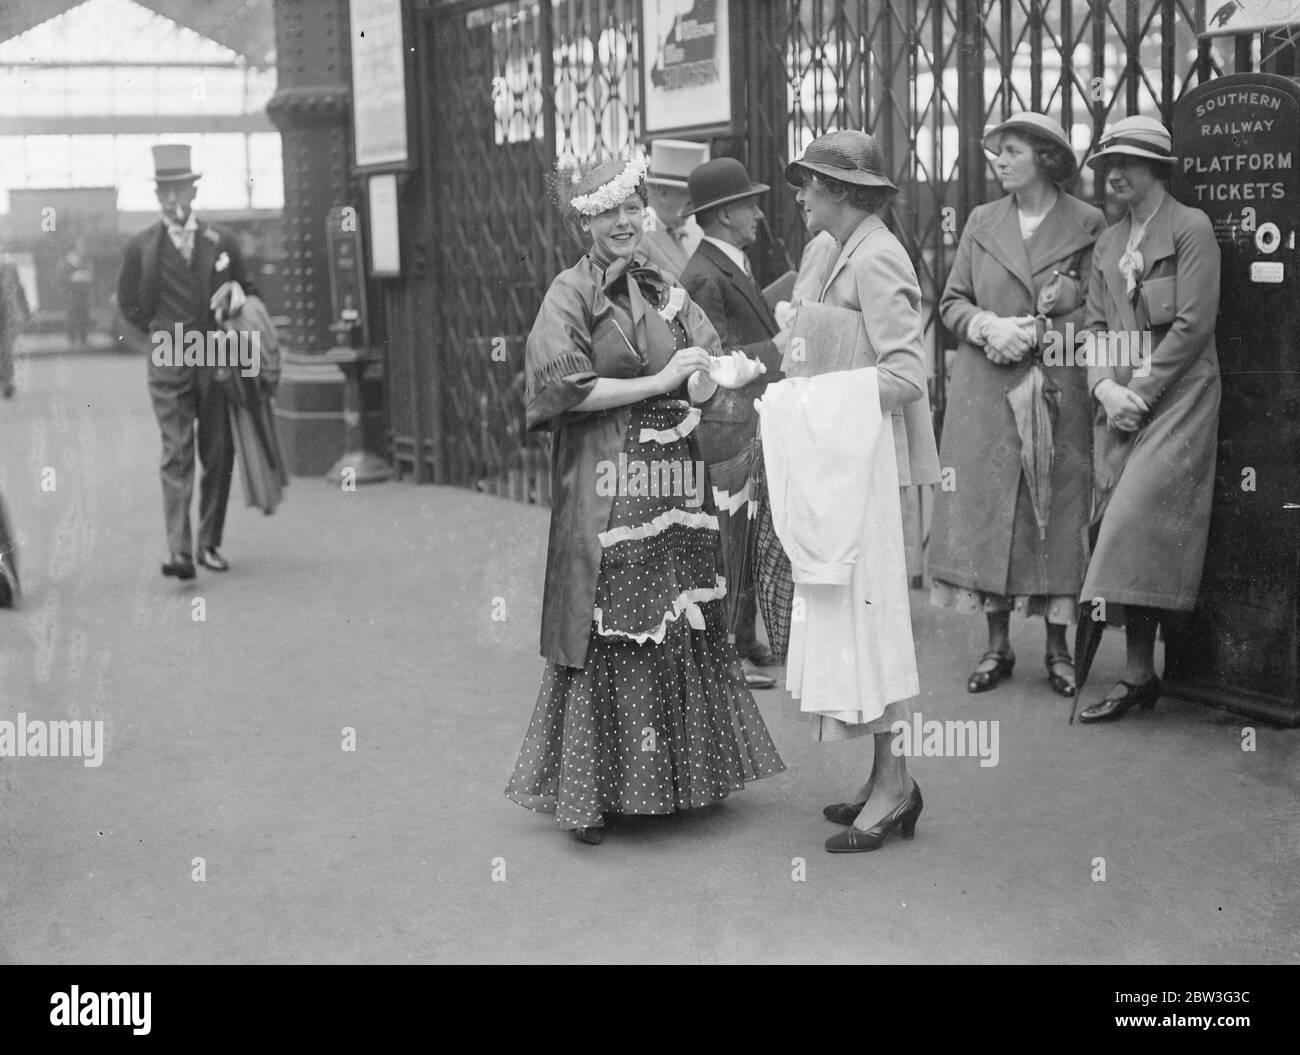 Ascot Gold Cup de jour mode . Mlle Joan Branston dans une mode Ascot attrayante quand elle a quitté la gare de Waterloo pour le jour de la coupe d'or . 20 juin 1935 Banque D'Images